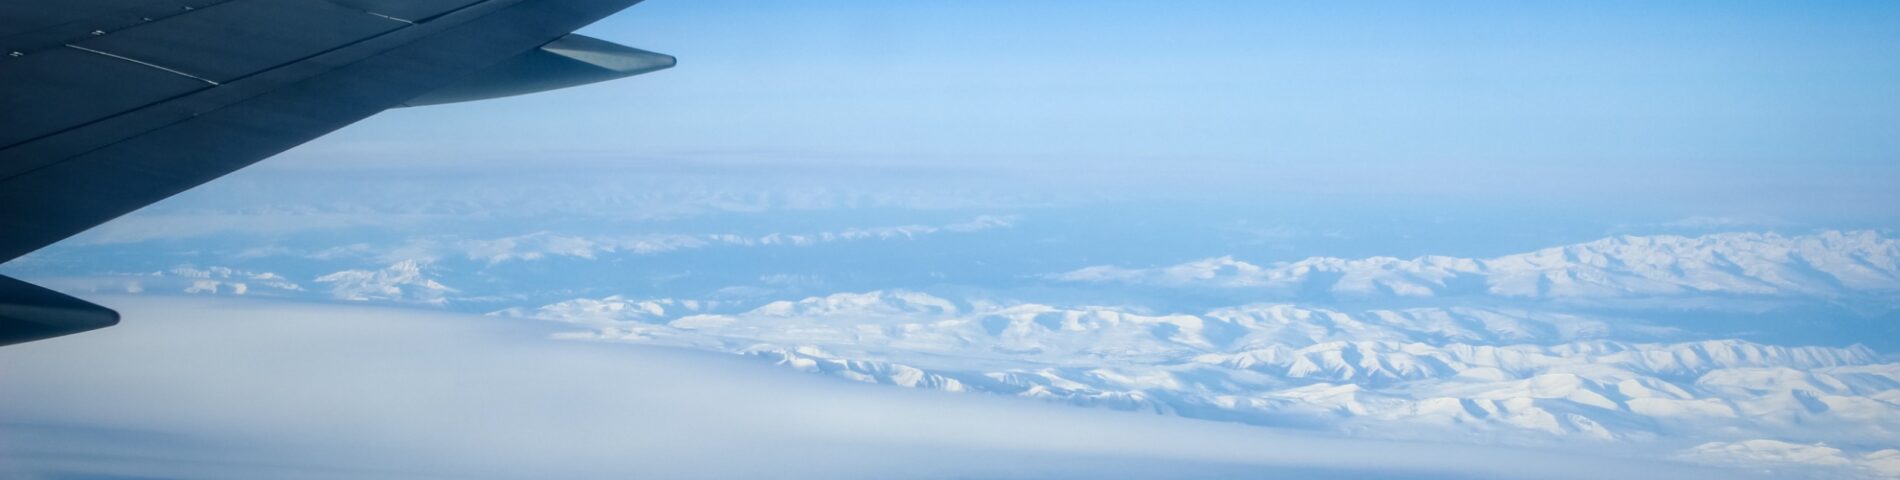 Avión sobrevolando montañas nevadas